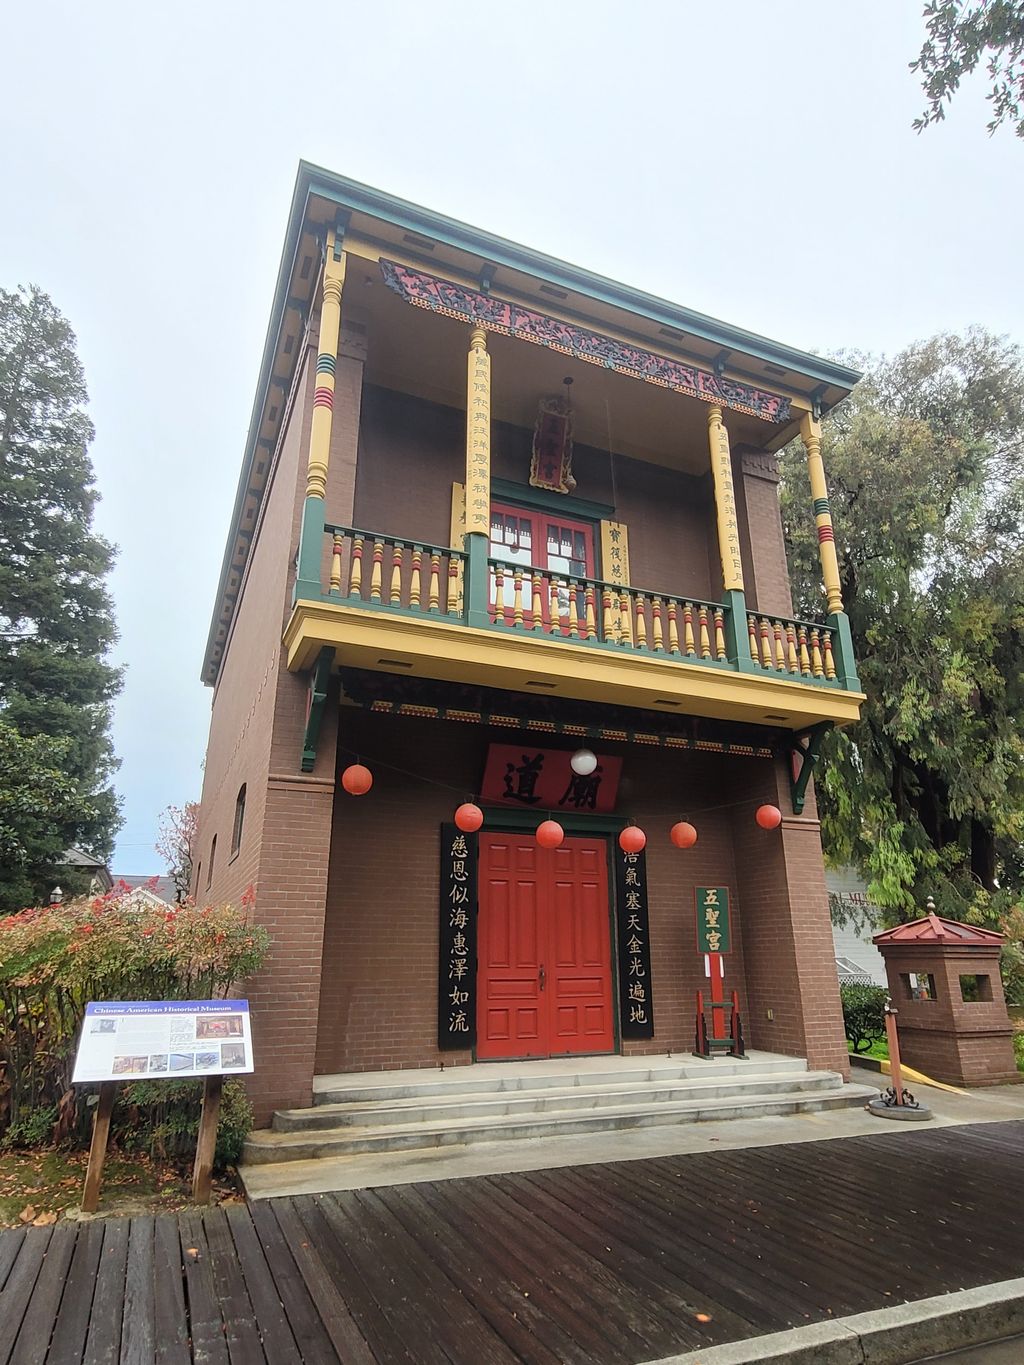 Chinese American Historical Museum at the Ng Shing Gung